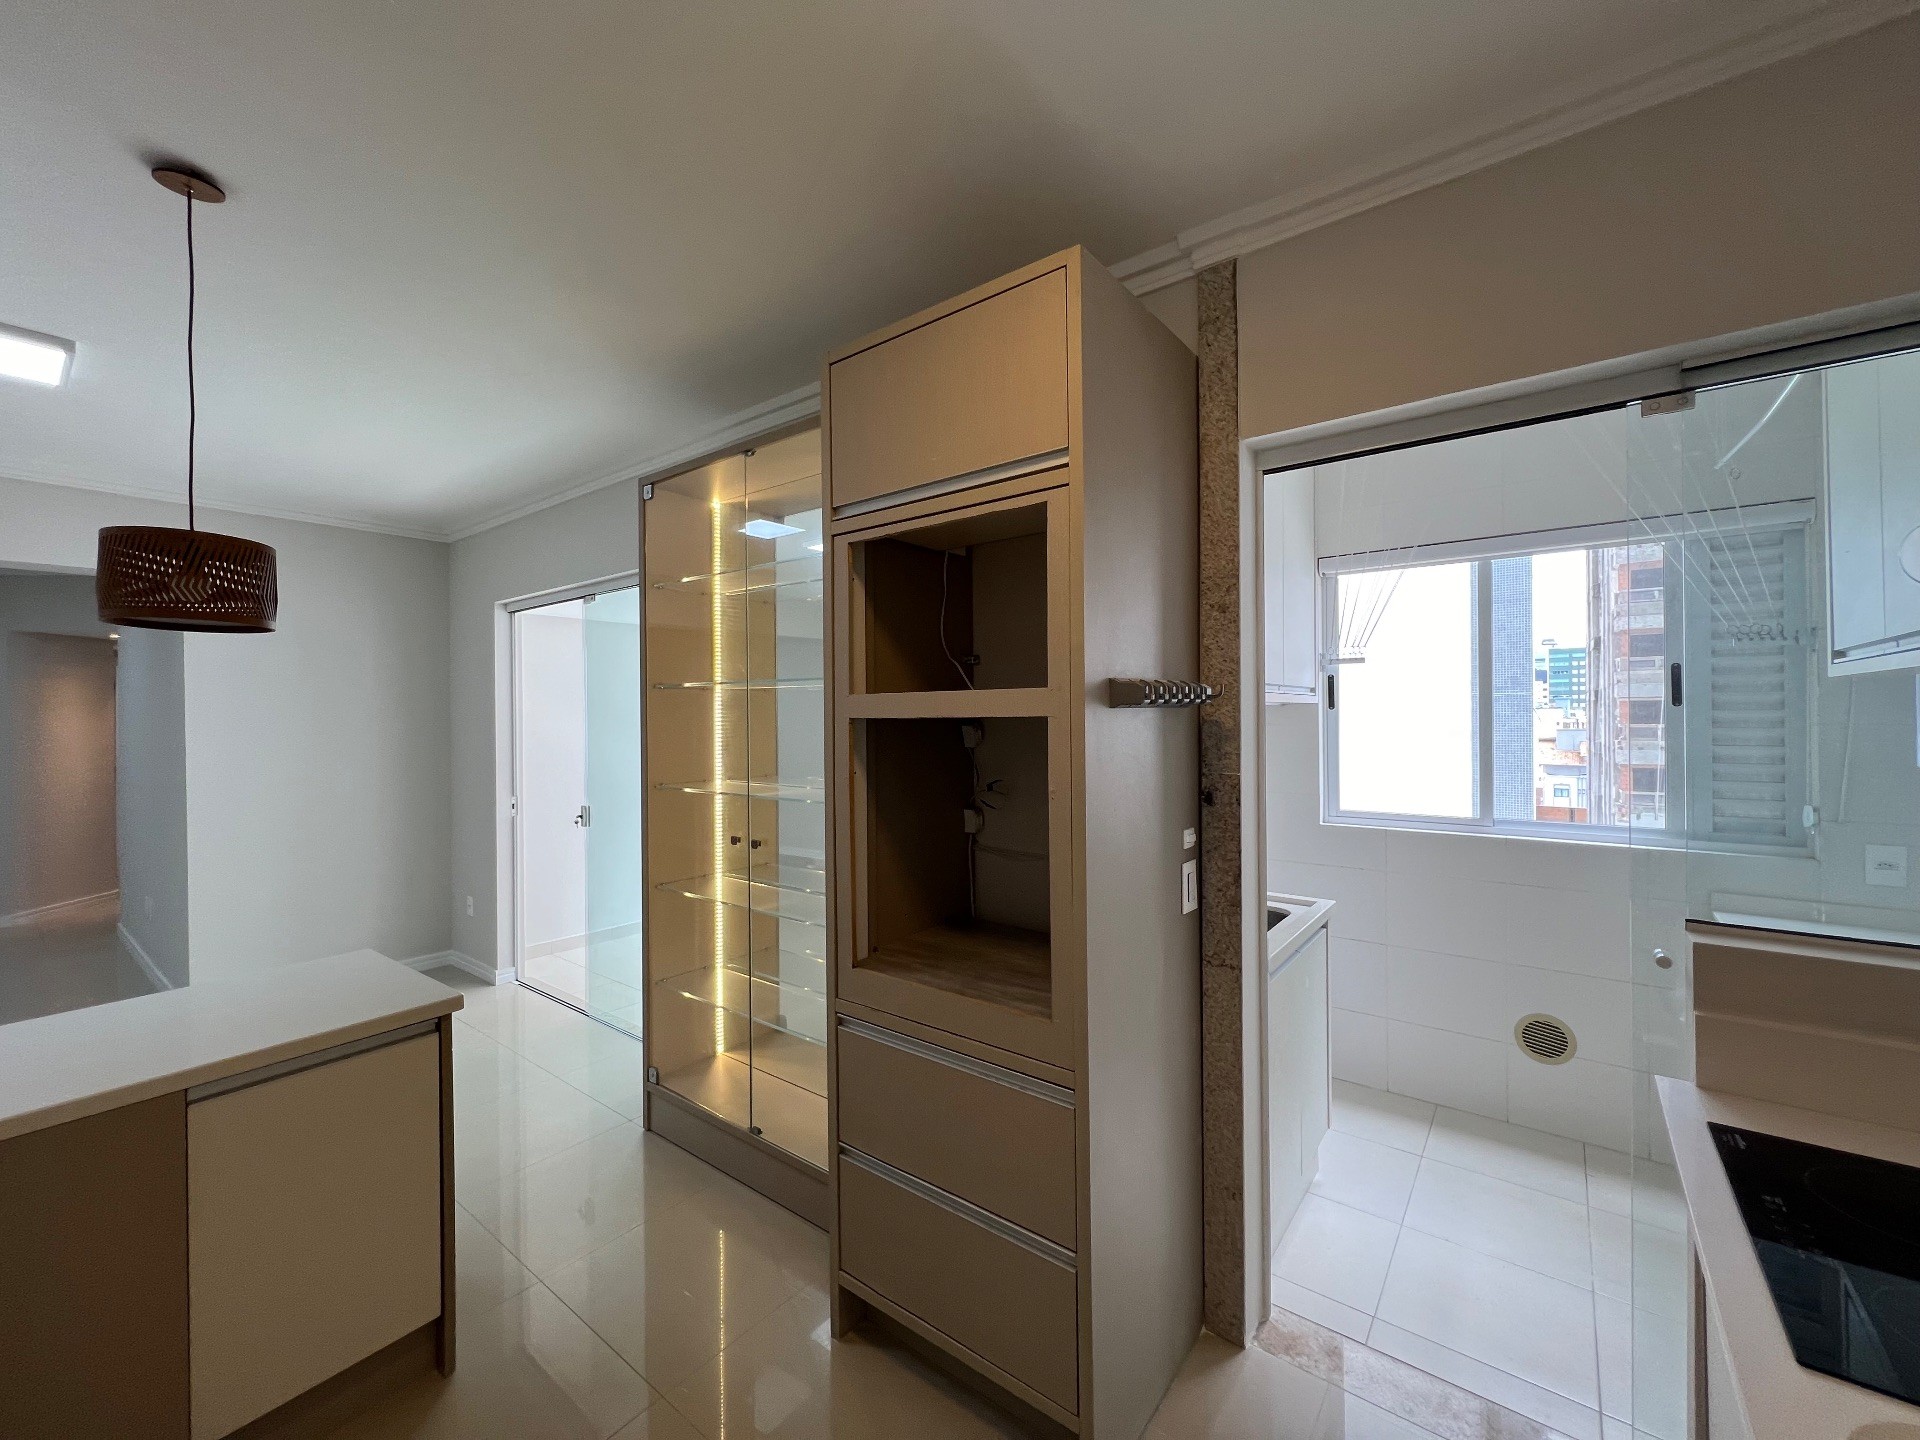 Apartamento Semi Mobiliado com 3 Dormitórios E Varanda Gourmet com Churrasqueira Localizado no Centro de Balneário Camboriú - SC